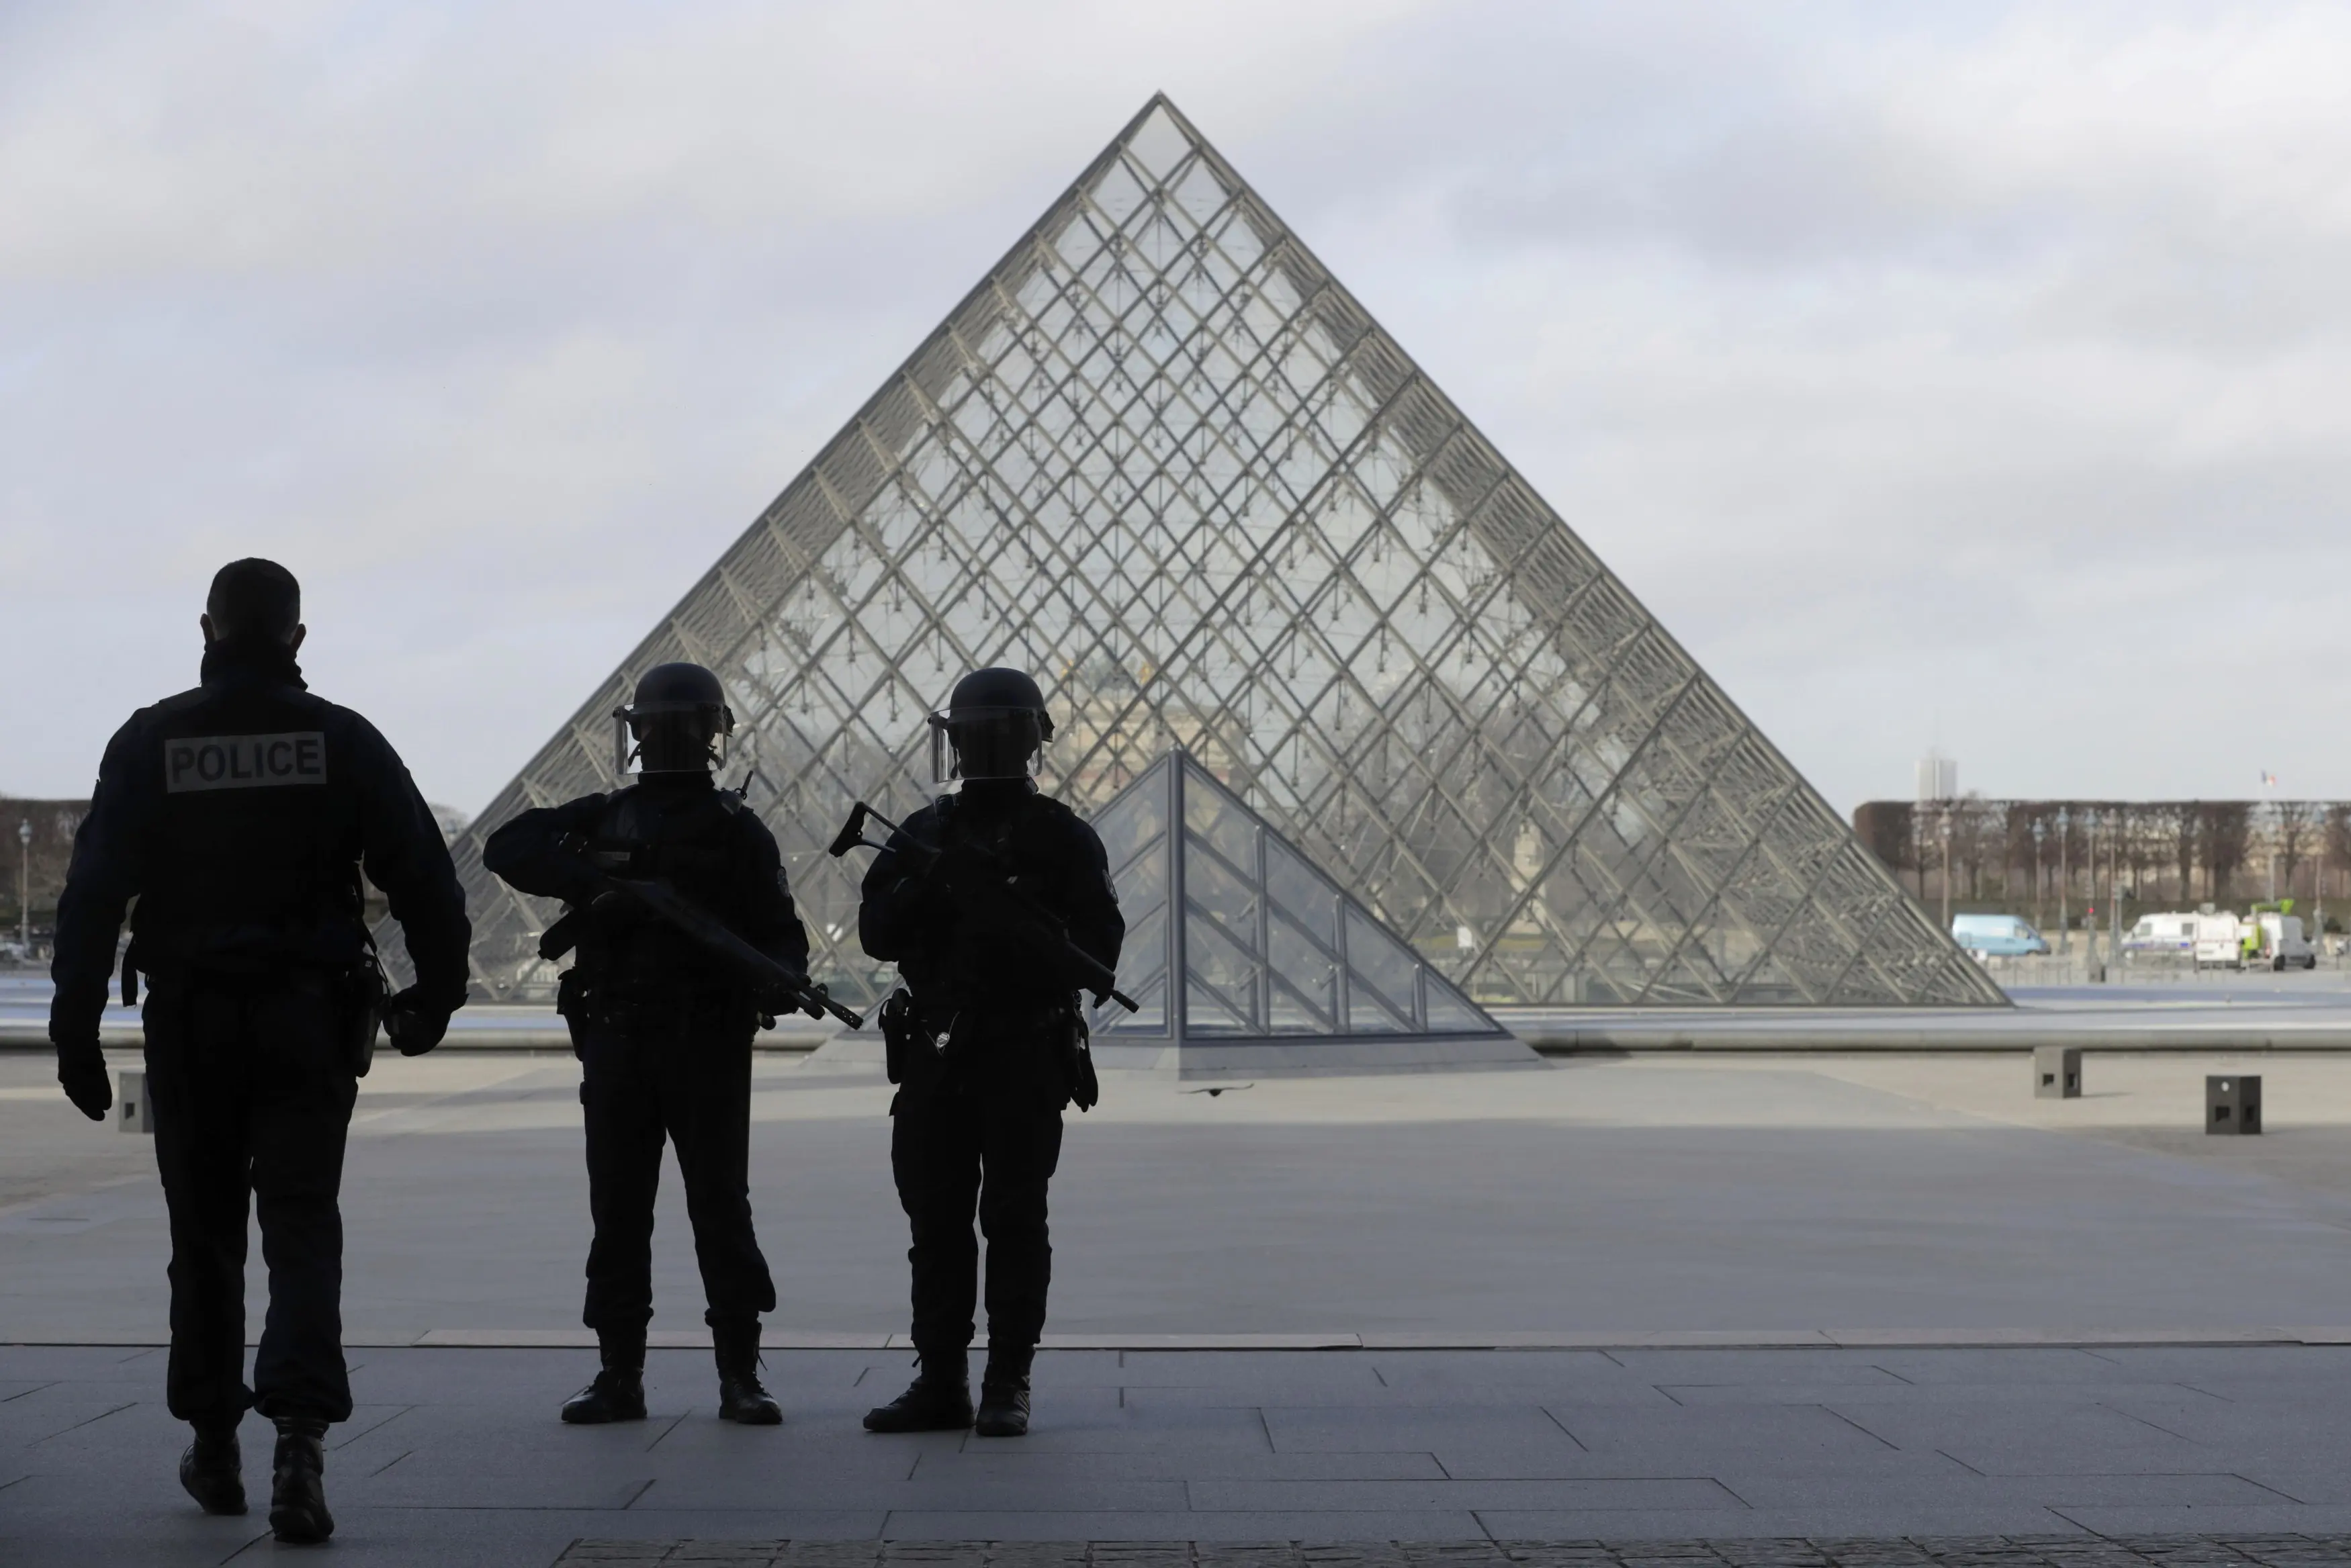 כוח משטרה צרפתי במוזיאון הלובר שבפריז, אתמול